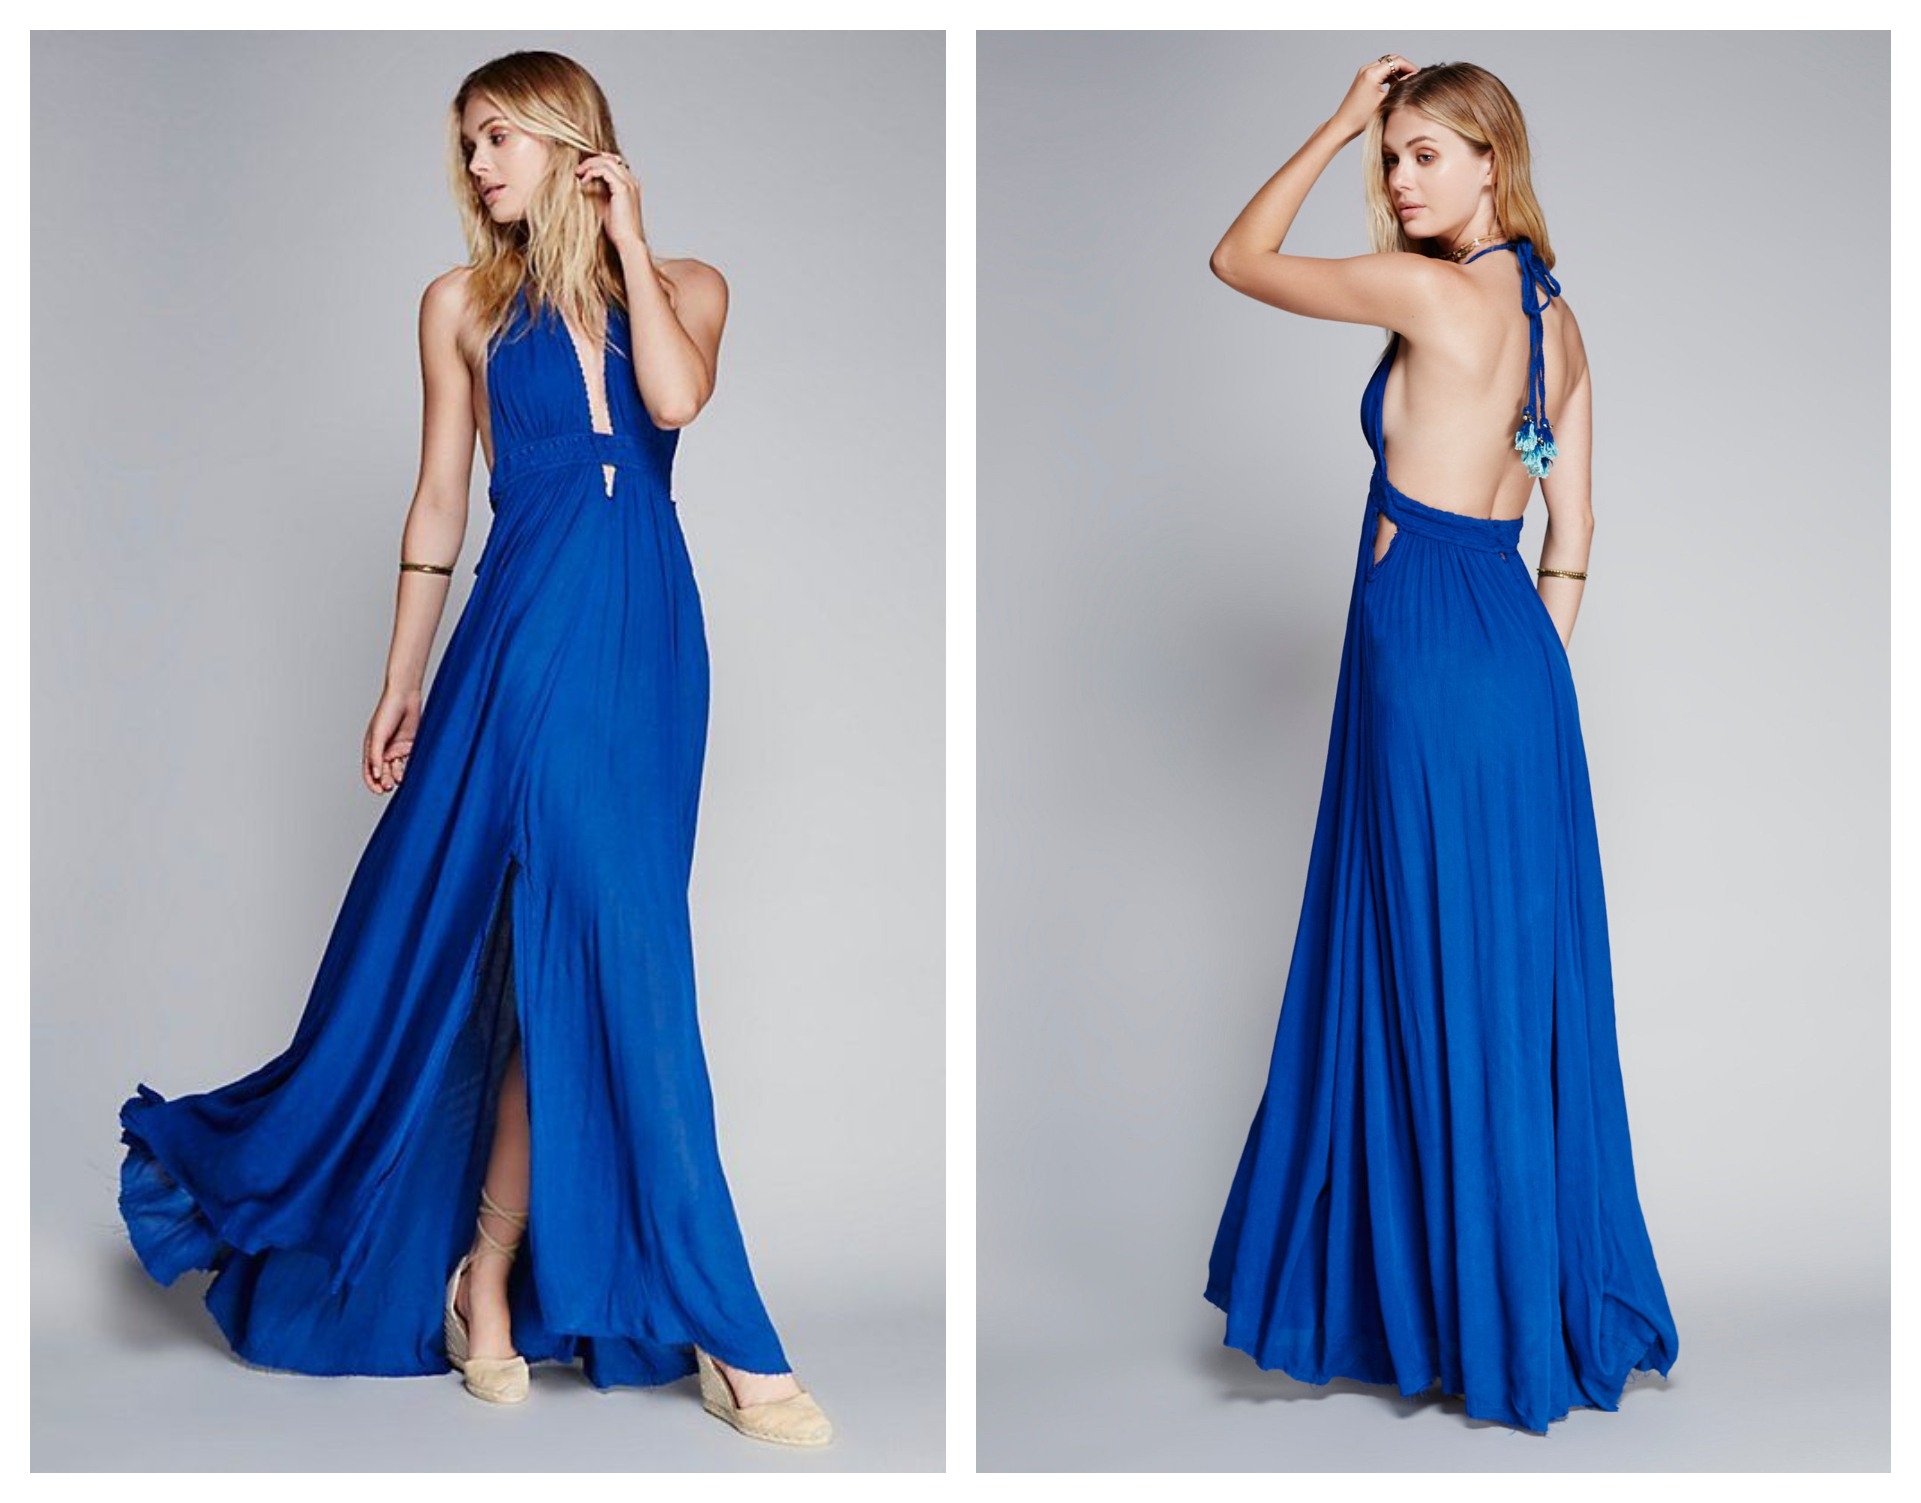 Designer Leicht Blaues Kleid Mit Glitzer Ärmel17 Einzigartig Blaues Kleid Mit Glitzer Design